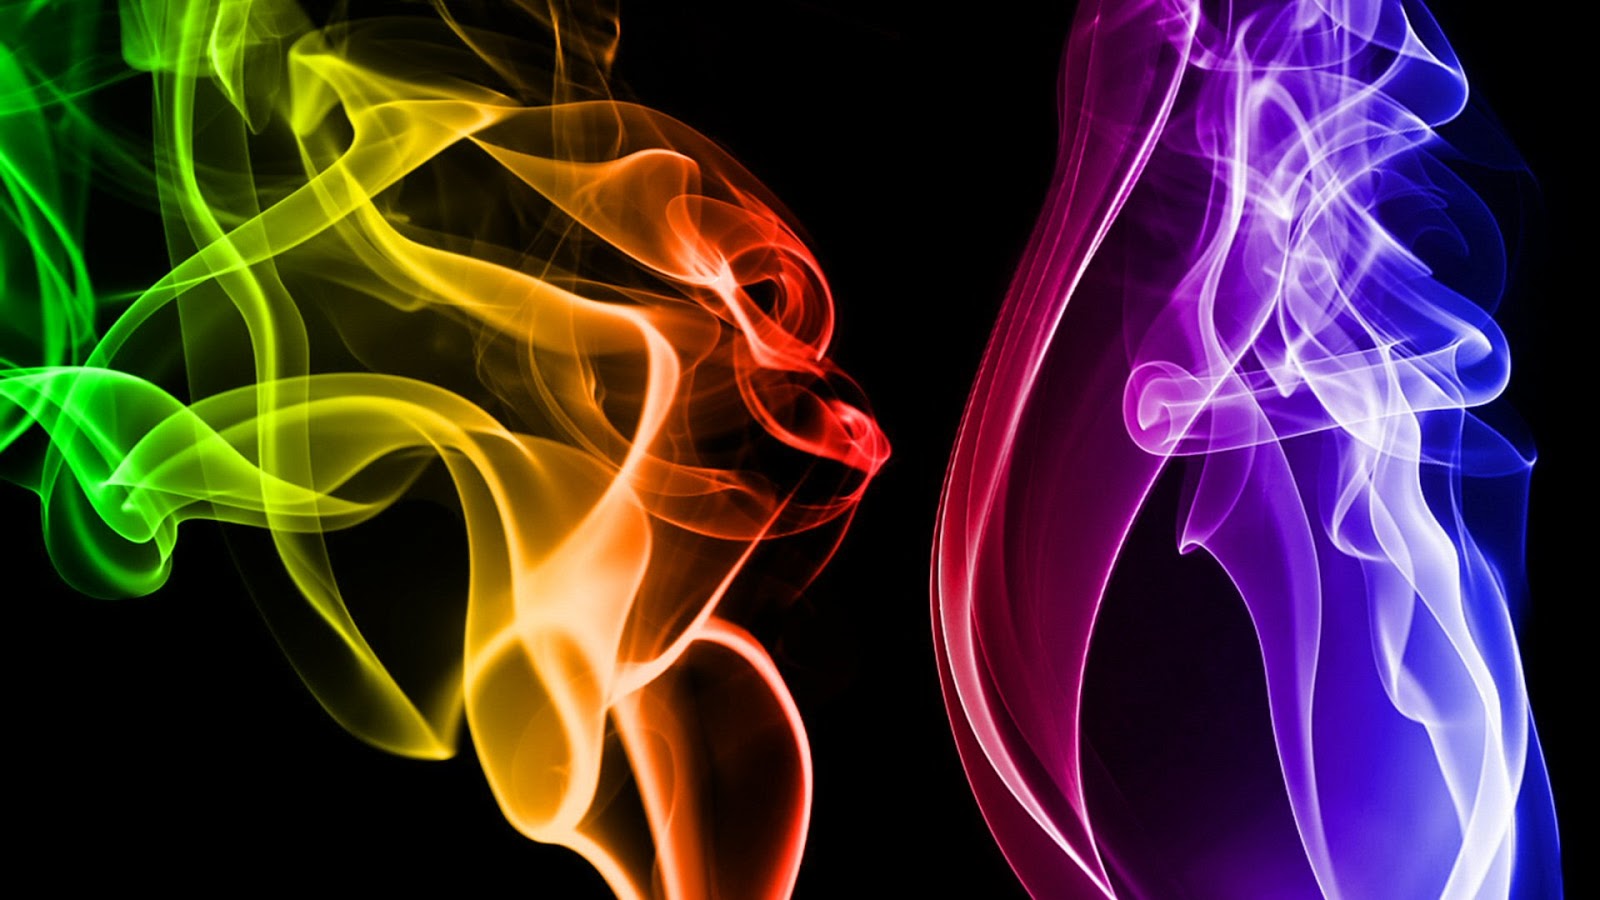 Colorful Smoke HD Wallpaper Check Out